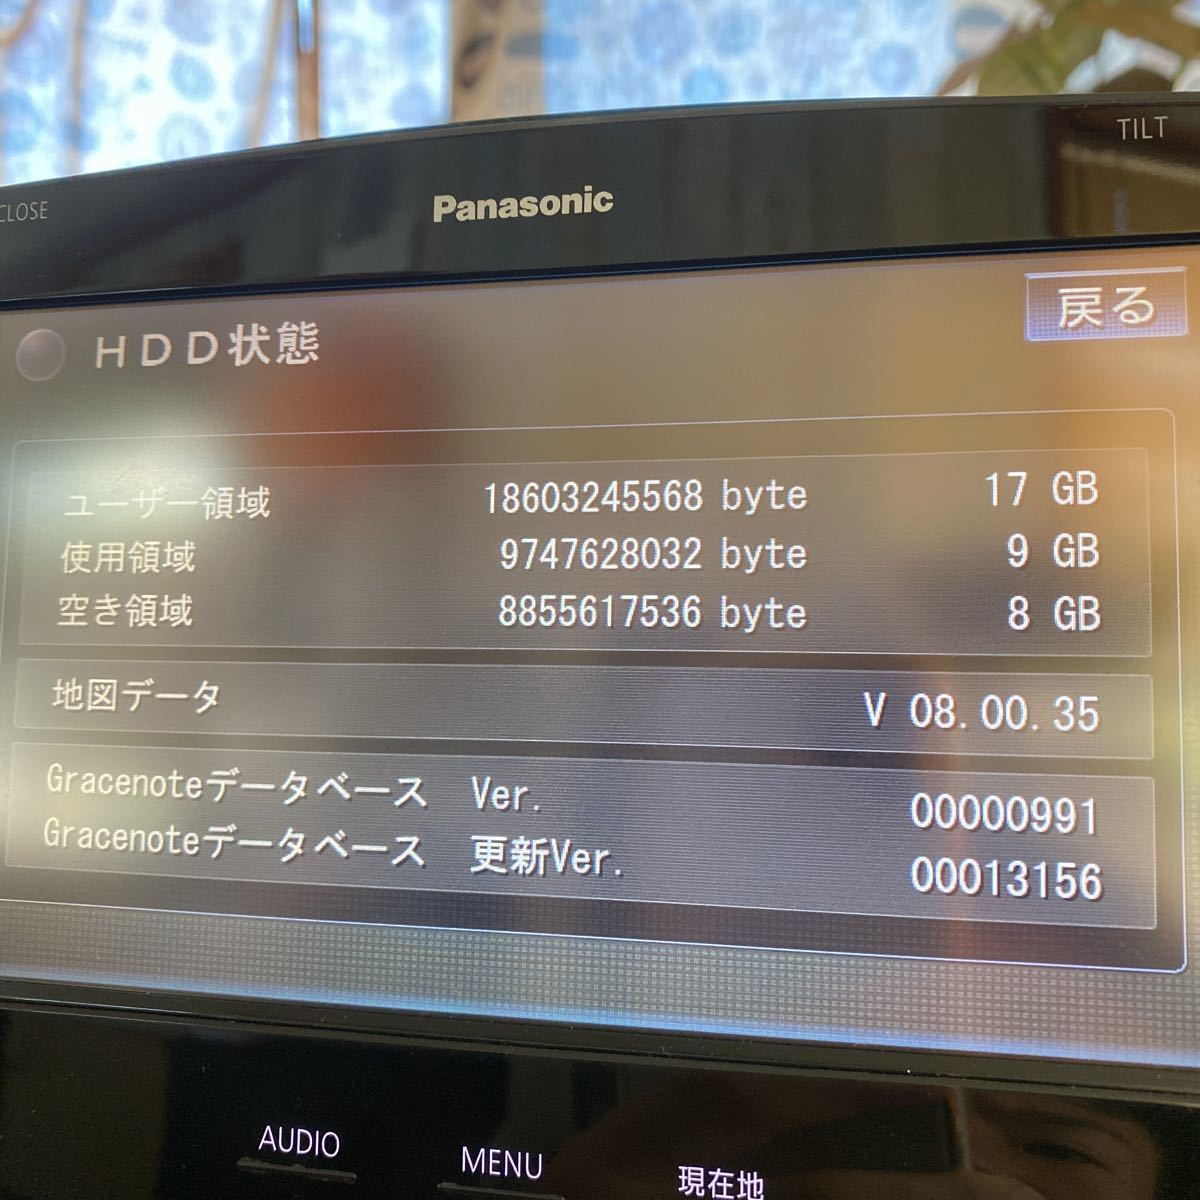  Panasonic Strada CN-HX1000D remote control manual B-cas card reader Touareg audio panel 